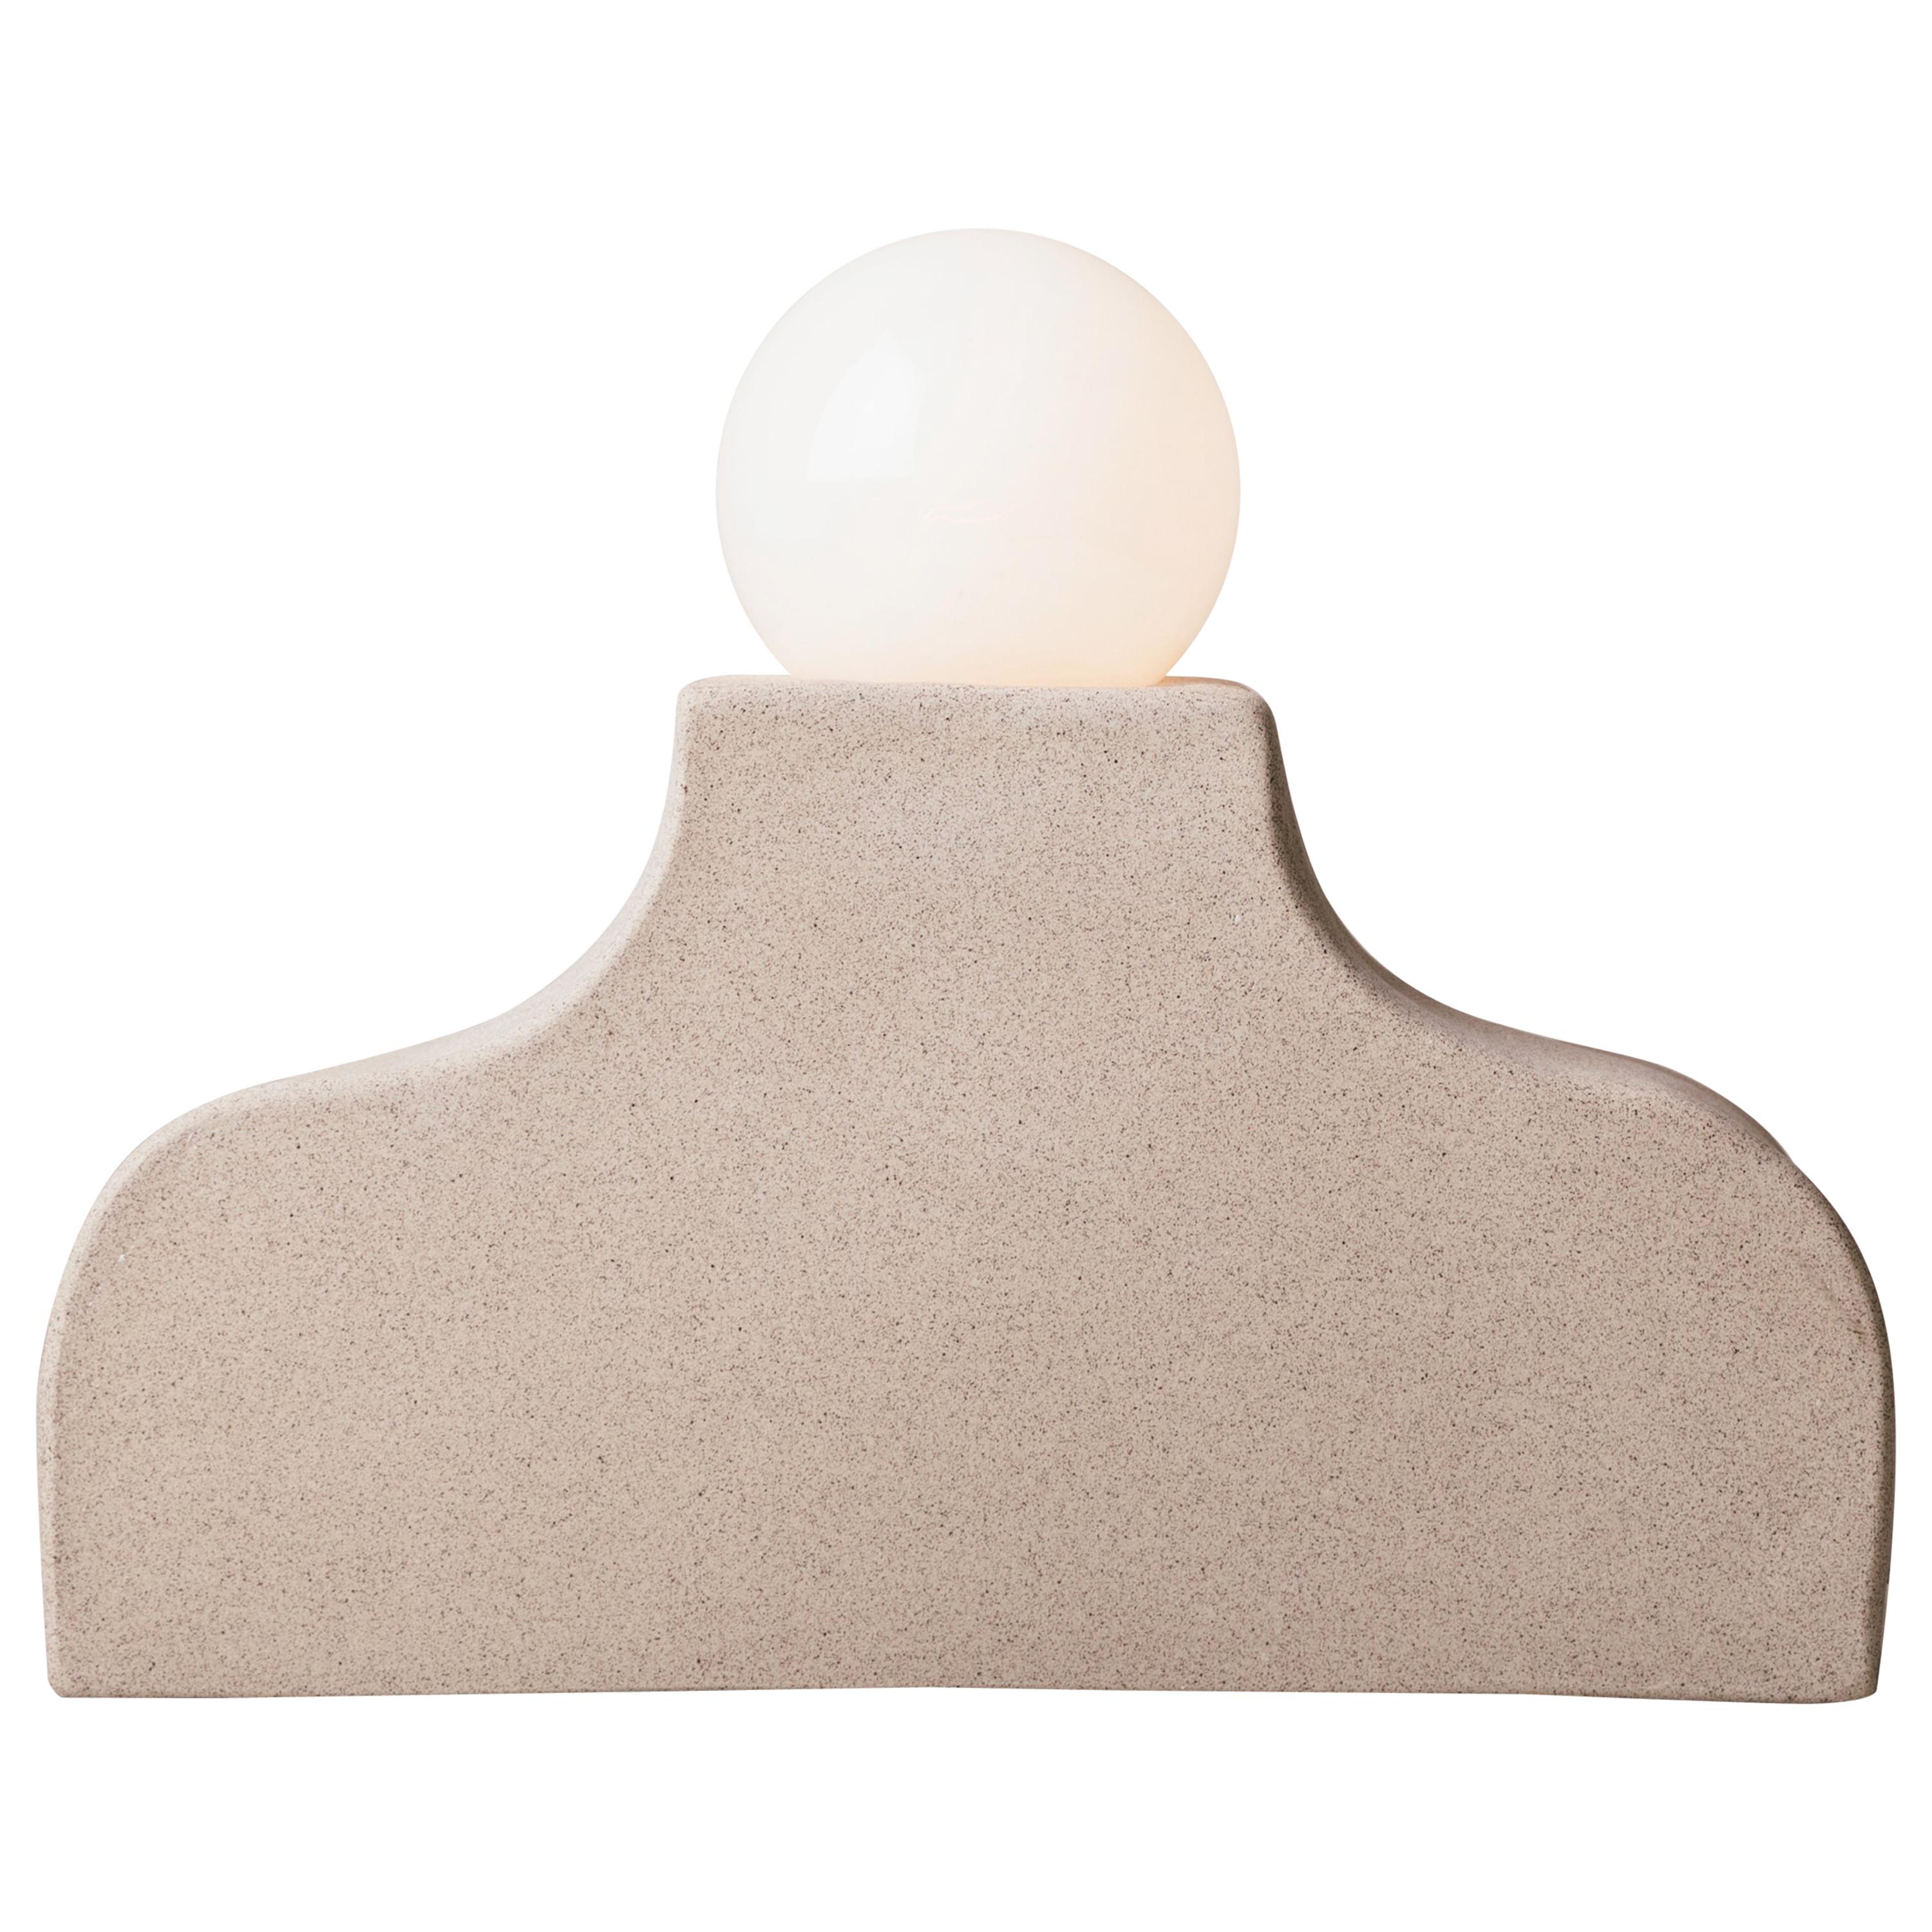 Padernal Mesa, Ceramic Table Lamp For Sale